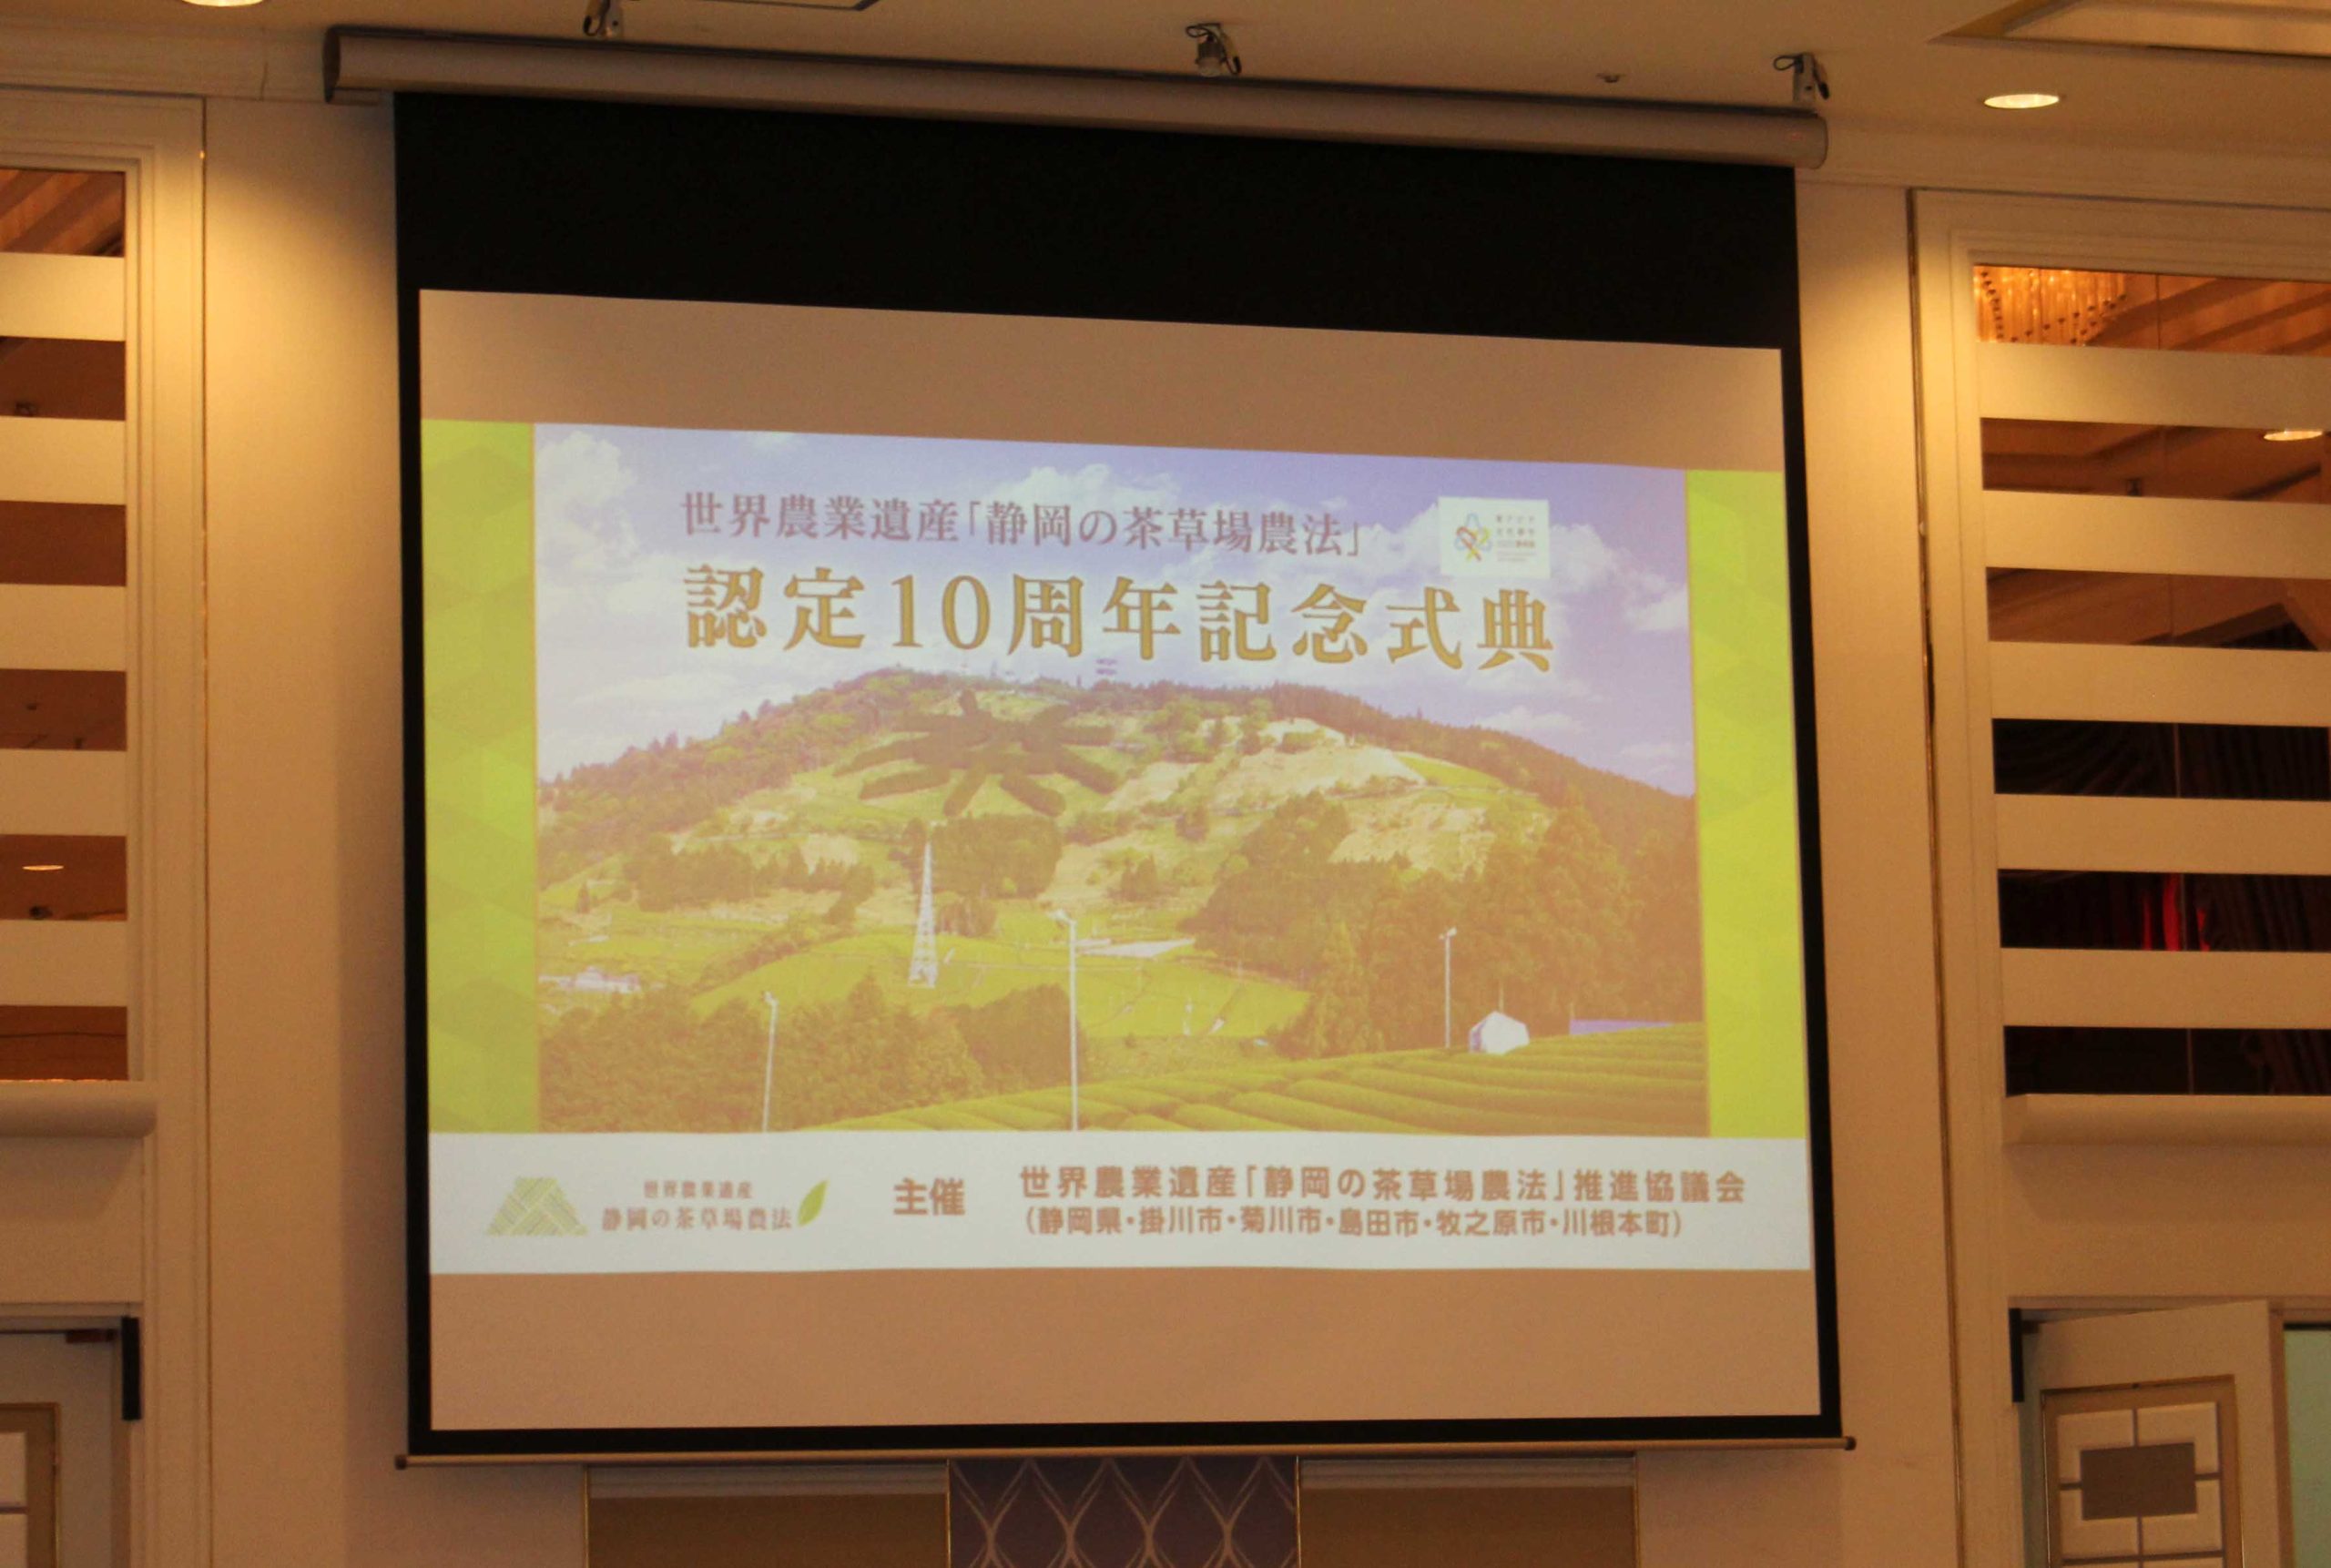 世界農業遺産「静岡の茶草場農法」認定10周年記念式典